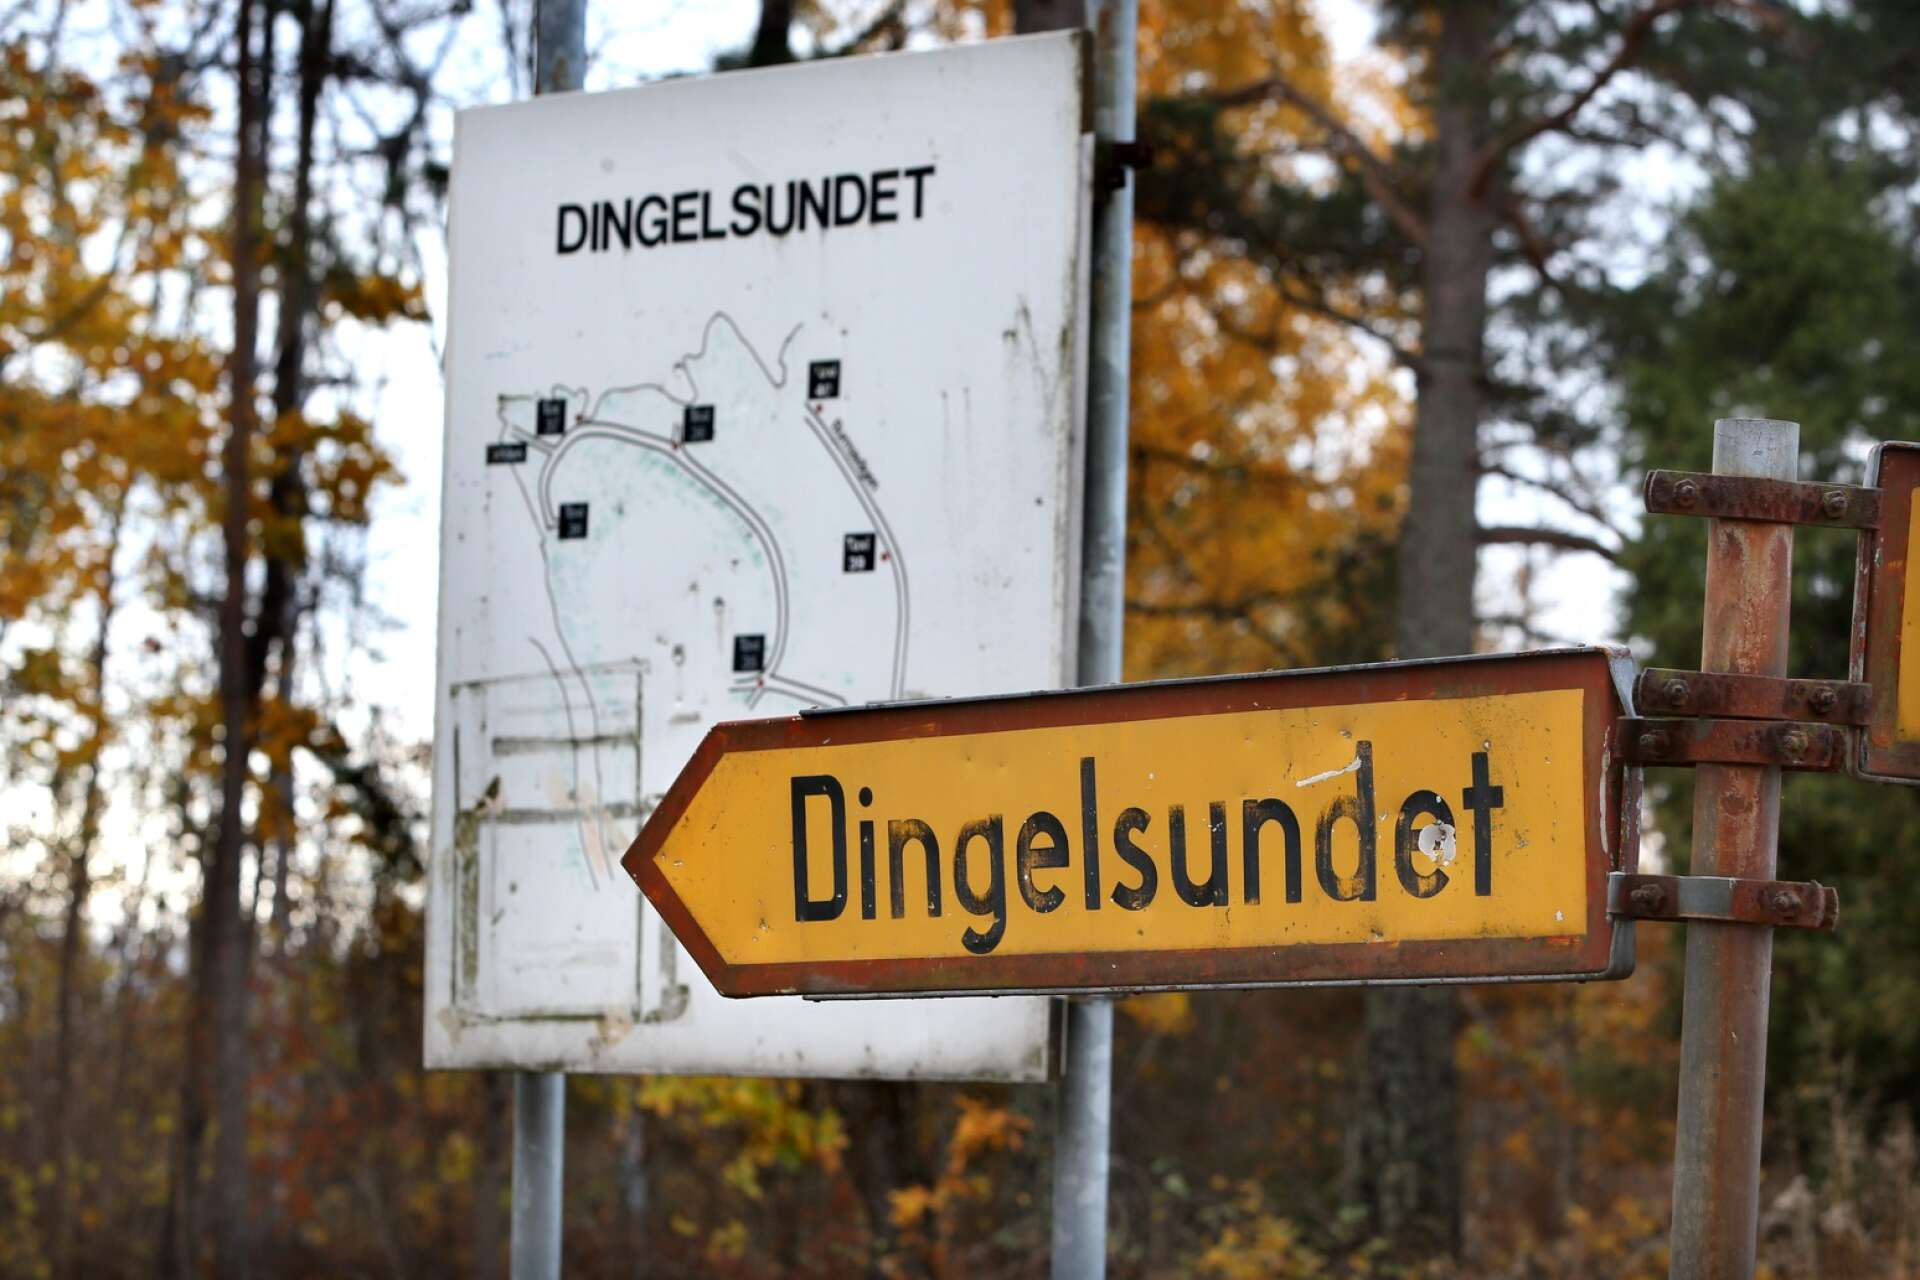 Värmlands dyraste område att köpa bostad på är Dingelsundet, enligt ny statistik från Fastighetsbyrån.